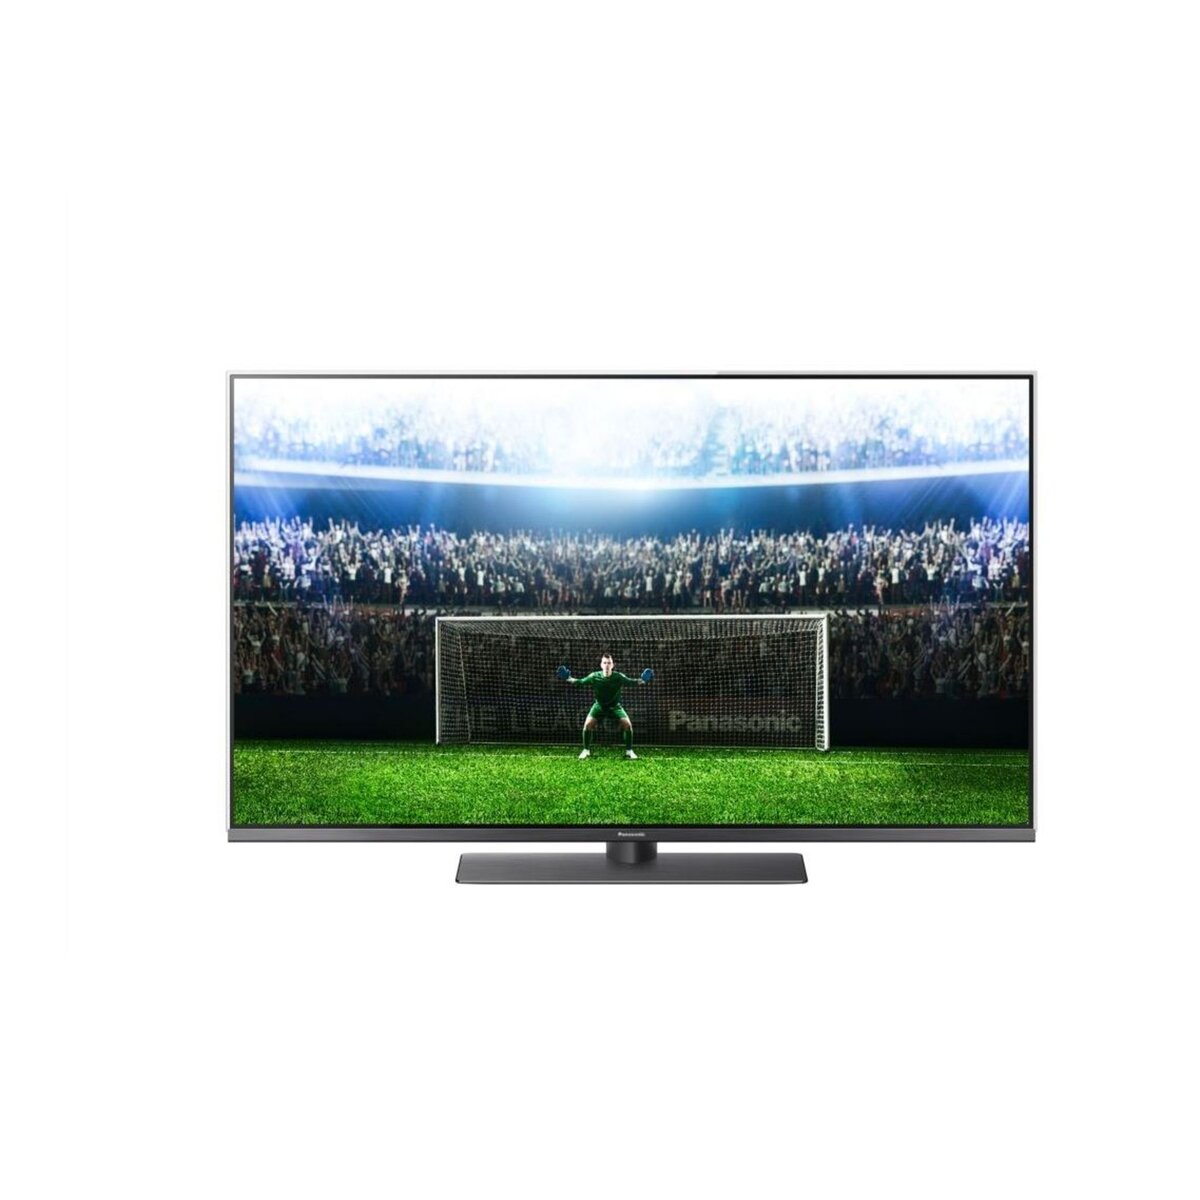 PANASONIC 49FX780 TV LED 4K UHD 124 cm HDR Smart TV